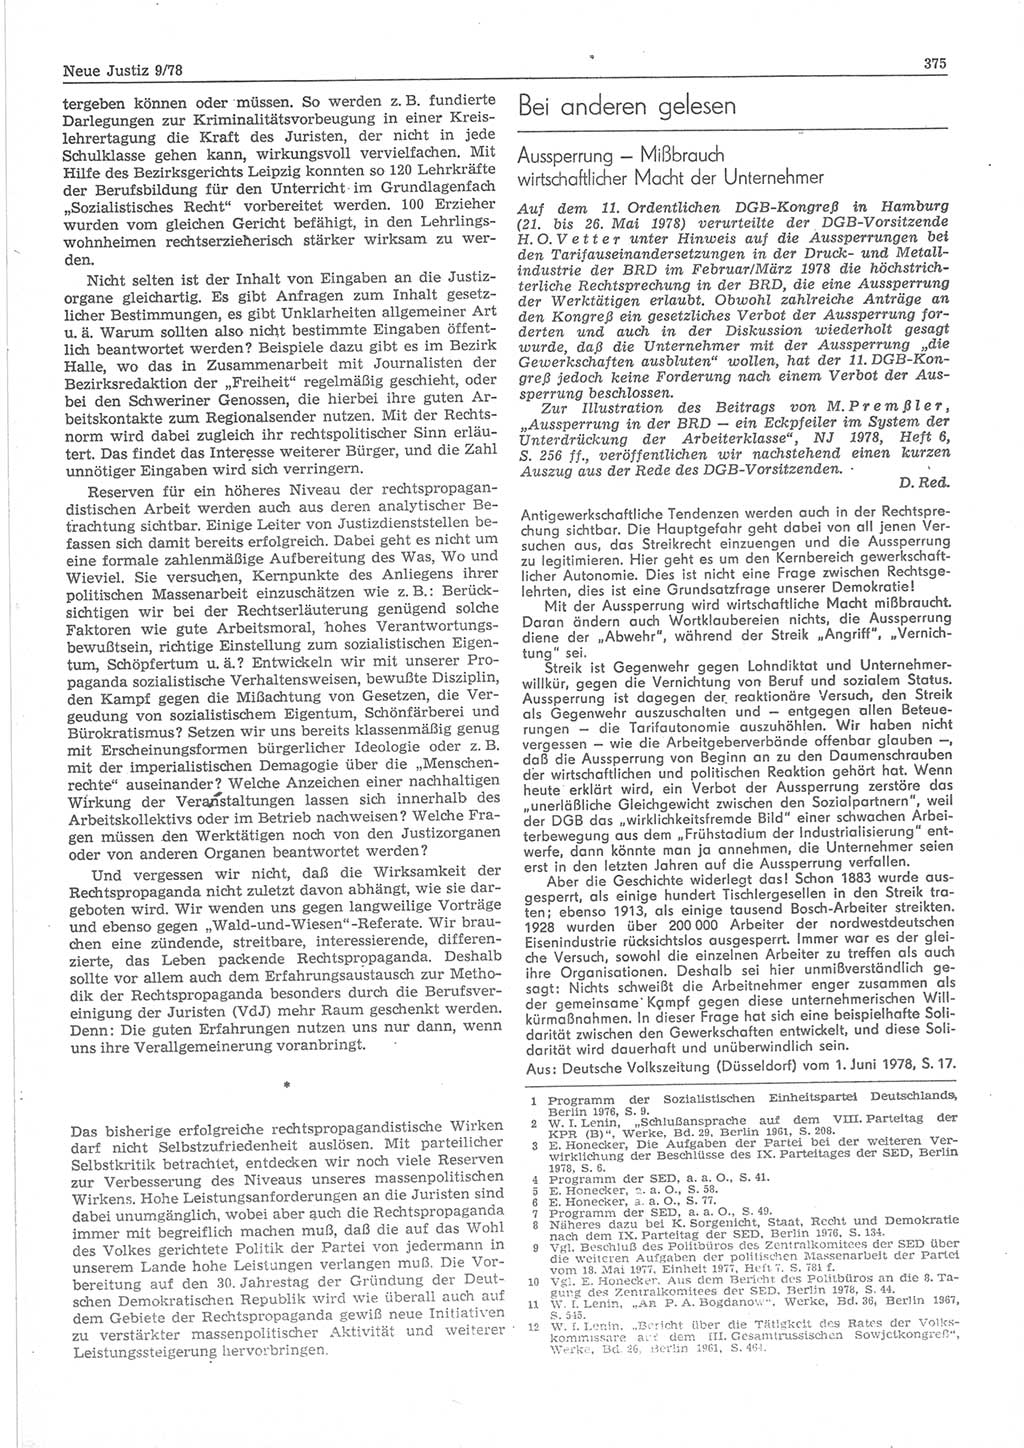 Neue Justiz (NJ), Zeitschrift für sozialistisches Recht und Gesetzlichkeit [Deutsche Demokratische Republik (DDR)], 32. Jahrgang 1978, Seite 375 (NJ DDR 1978, S. 375)